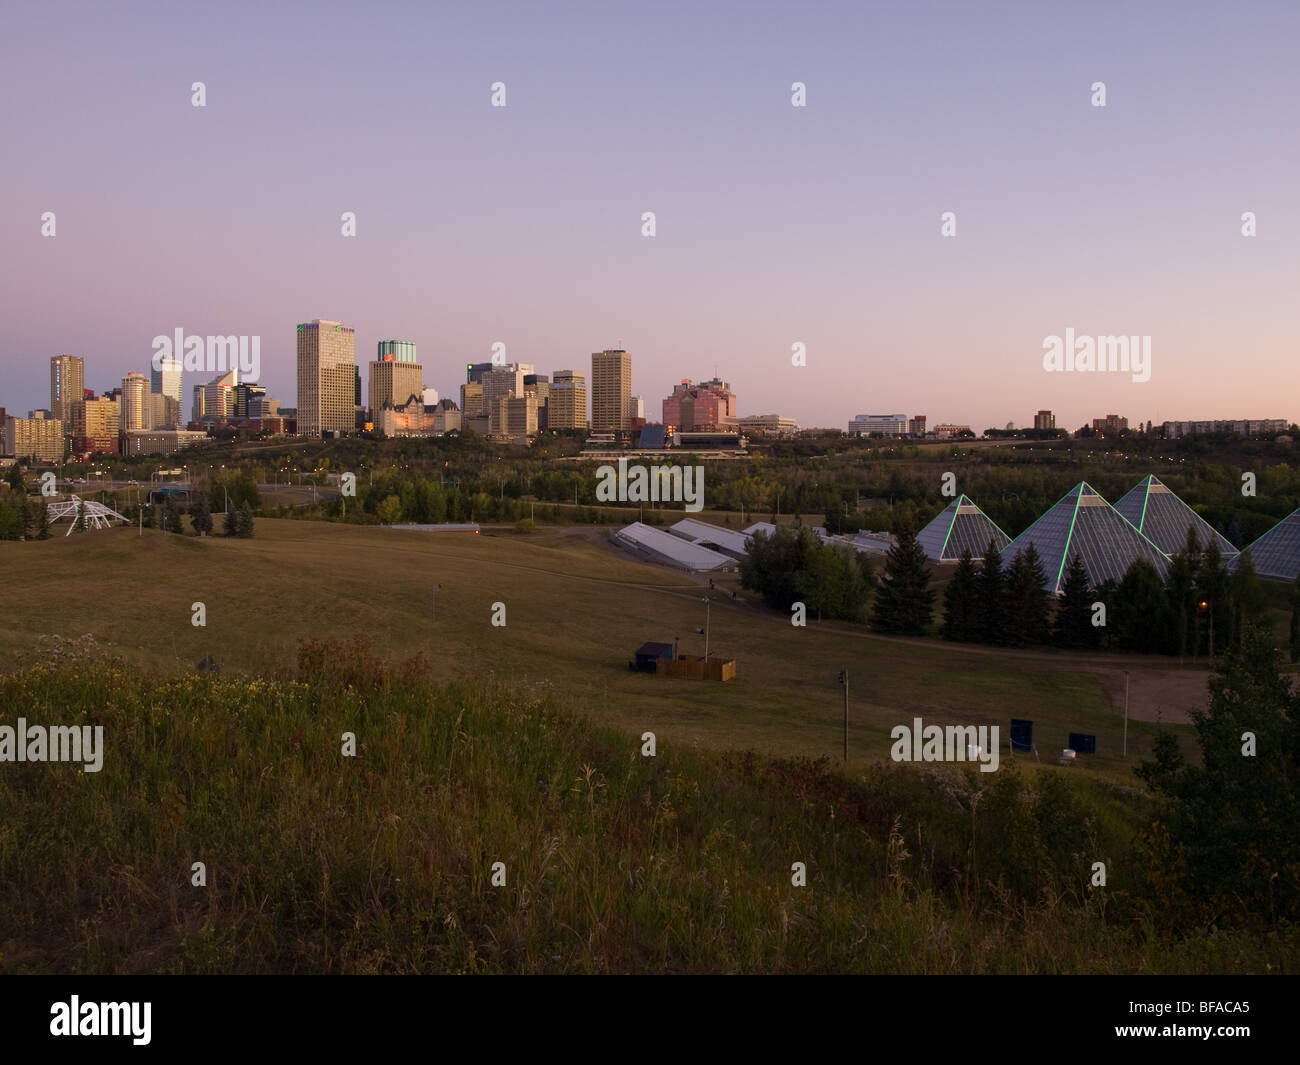 L'horizon du centre-ville d'Edmonton, Alberta, Canada avec les pyramides de la Muttart Conservatory au premier plan. Banque D'Images